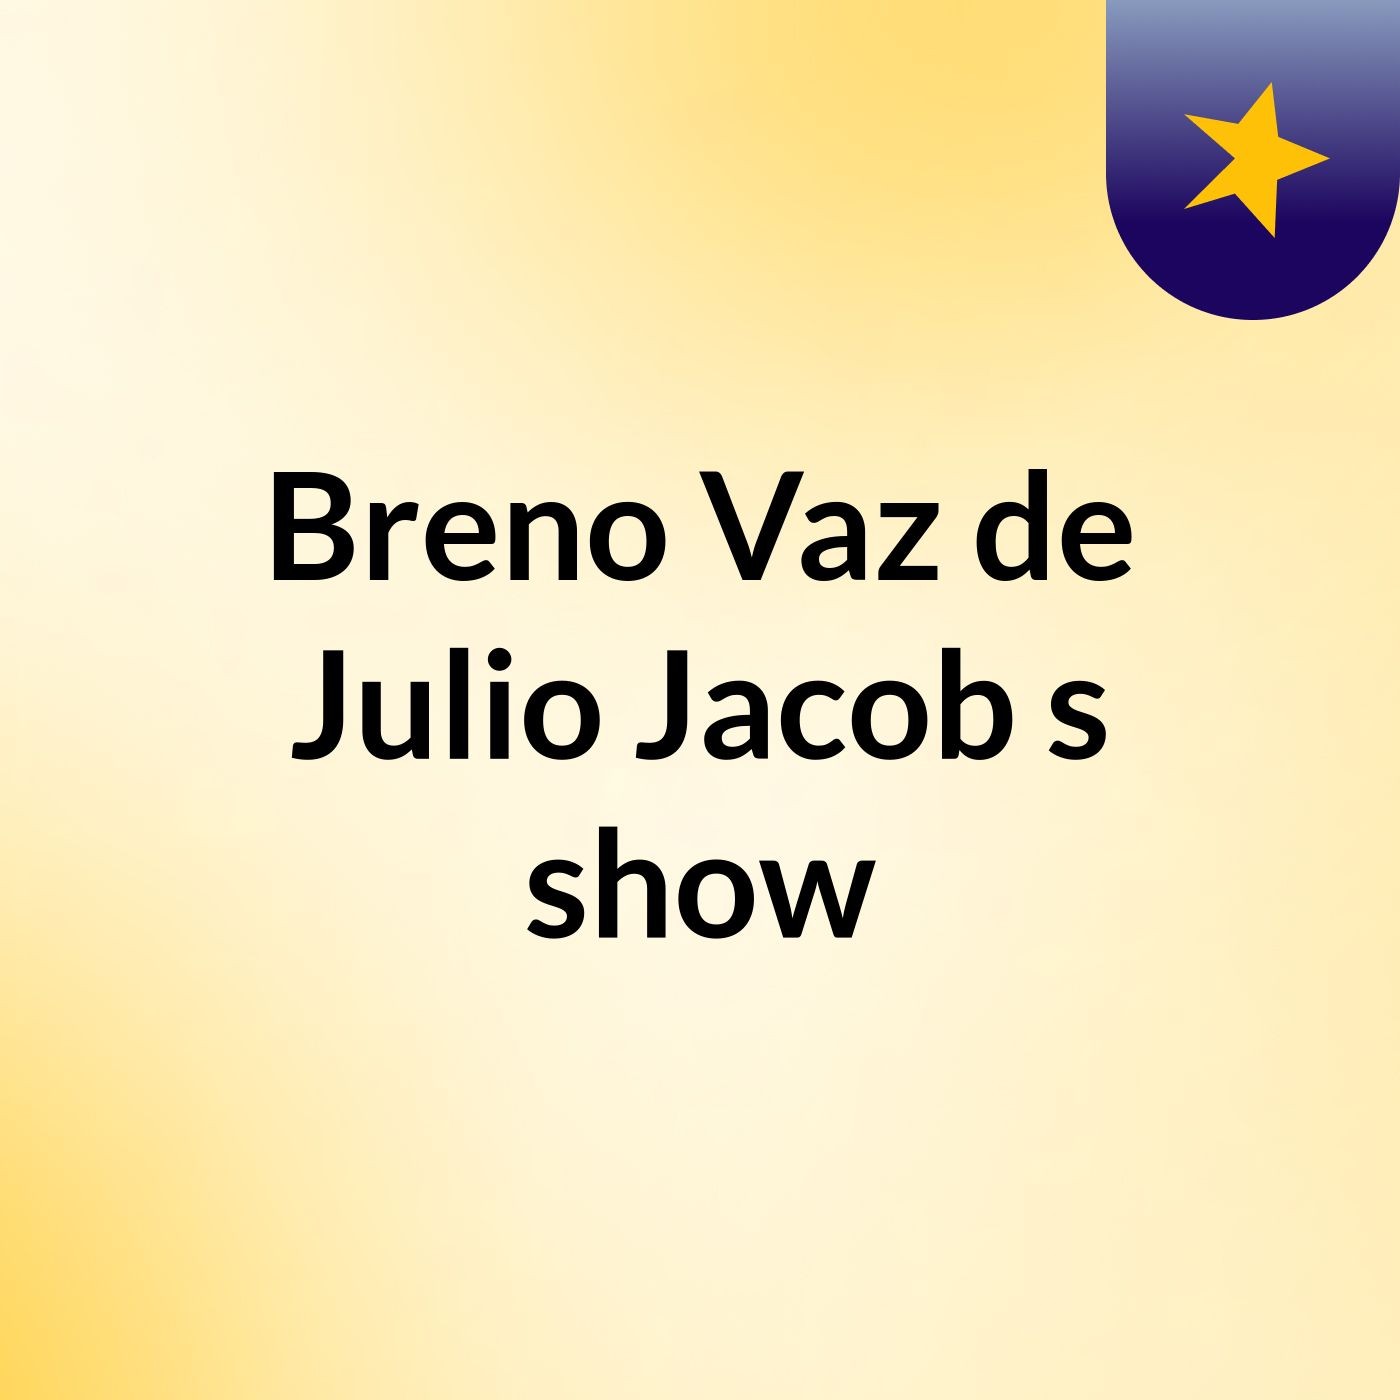 Breno Vaz de Julio Jacob's show